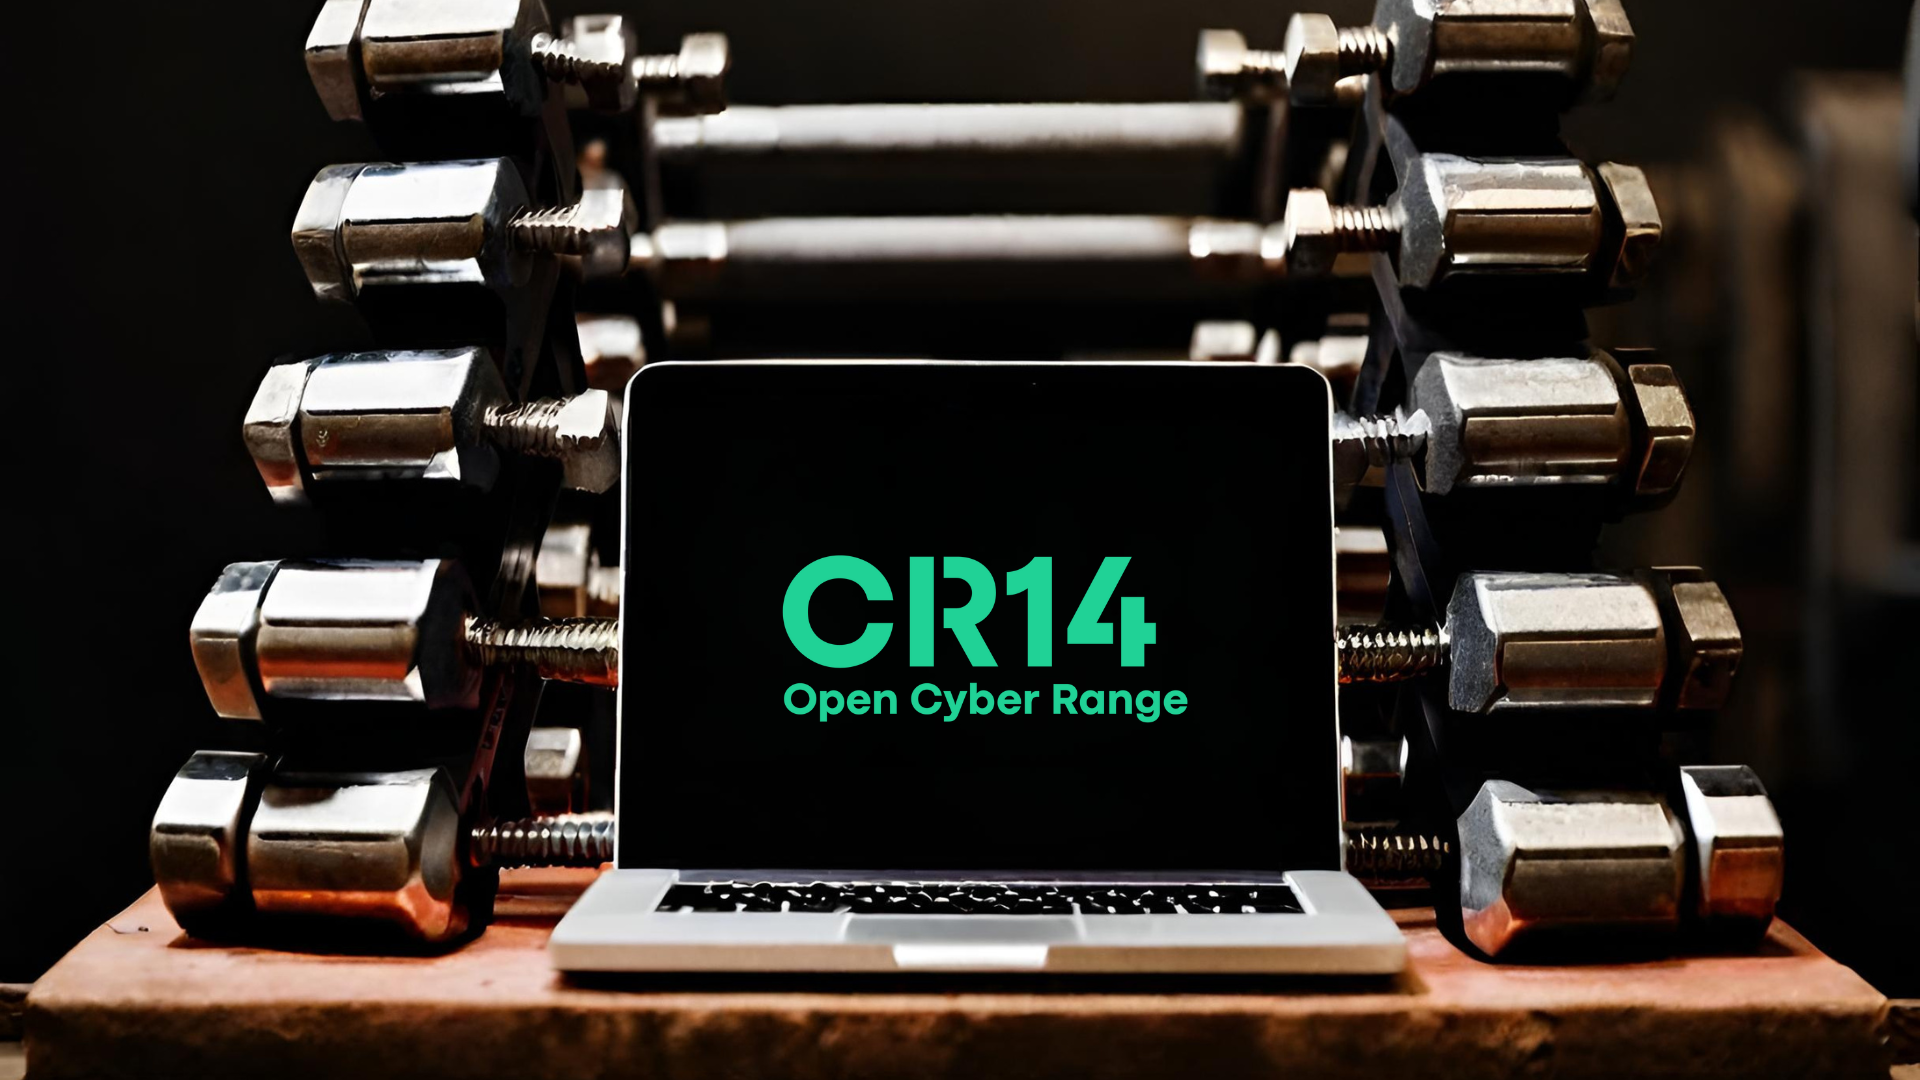 Open Cyber Range